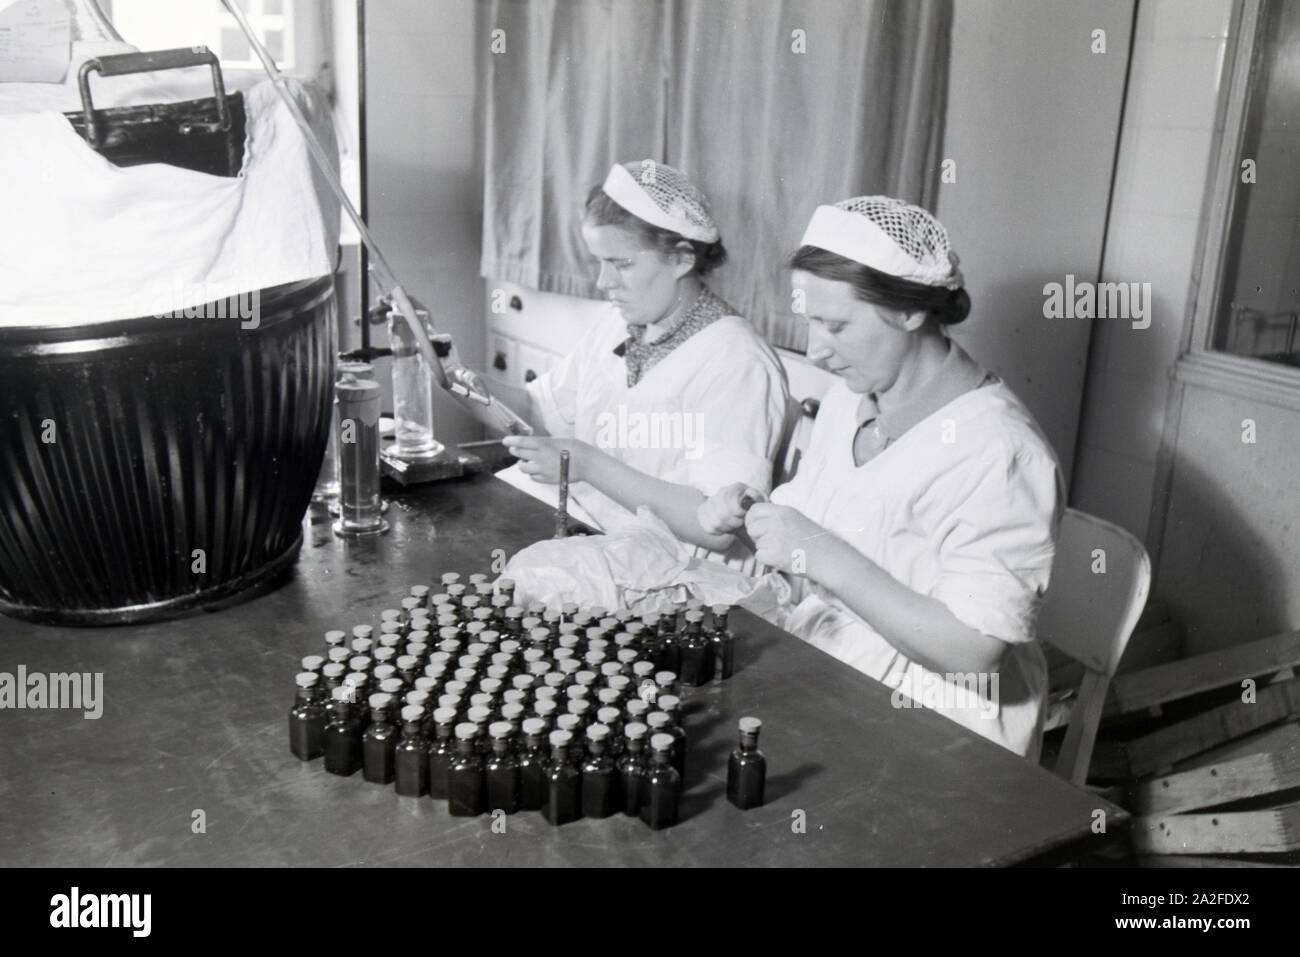 Zwei Laborantinnen füllen in Arbeit der Behringwerke Medikamente in kleine Flaschen ab, Marburg, Deutschland 1930er Jahre. Zwei lab Assistenten sind Befüllen Medikation in kleinen Flaschen im Labor der Behringwerke, Marburg, Deutschland 1930. Stockfoto